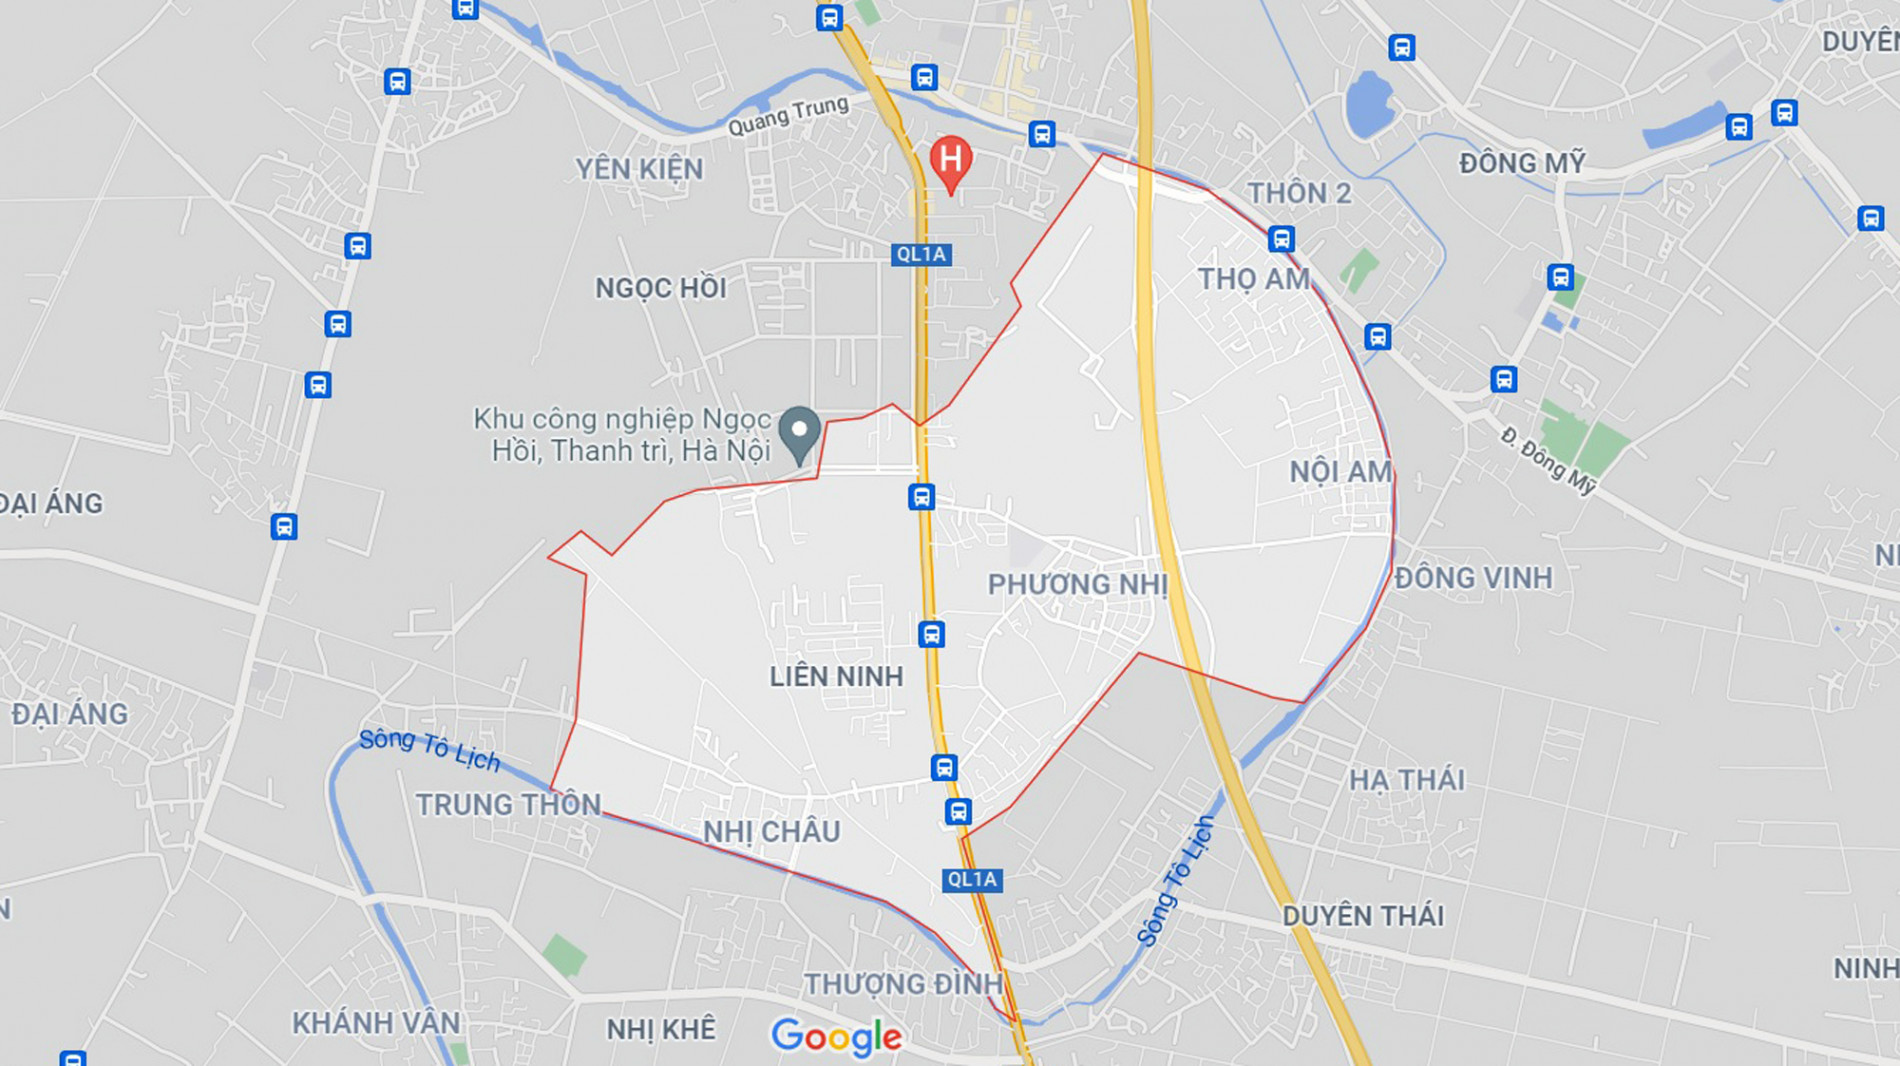 Những khu đất sắp thu hồi để mở đường ở xã Liên Ninh, Thanh Trì, Hà Nội (phần 9) - Ảnh 1.